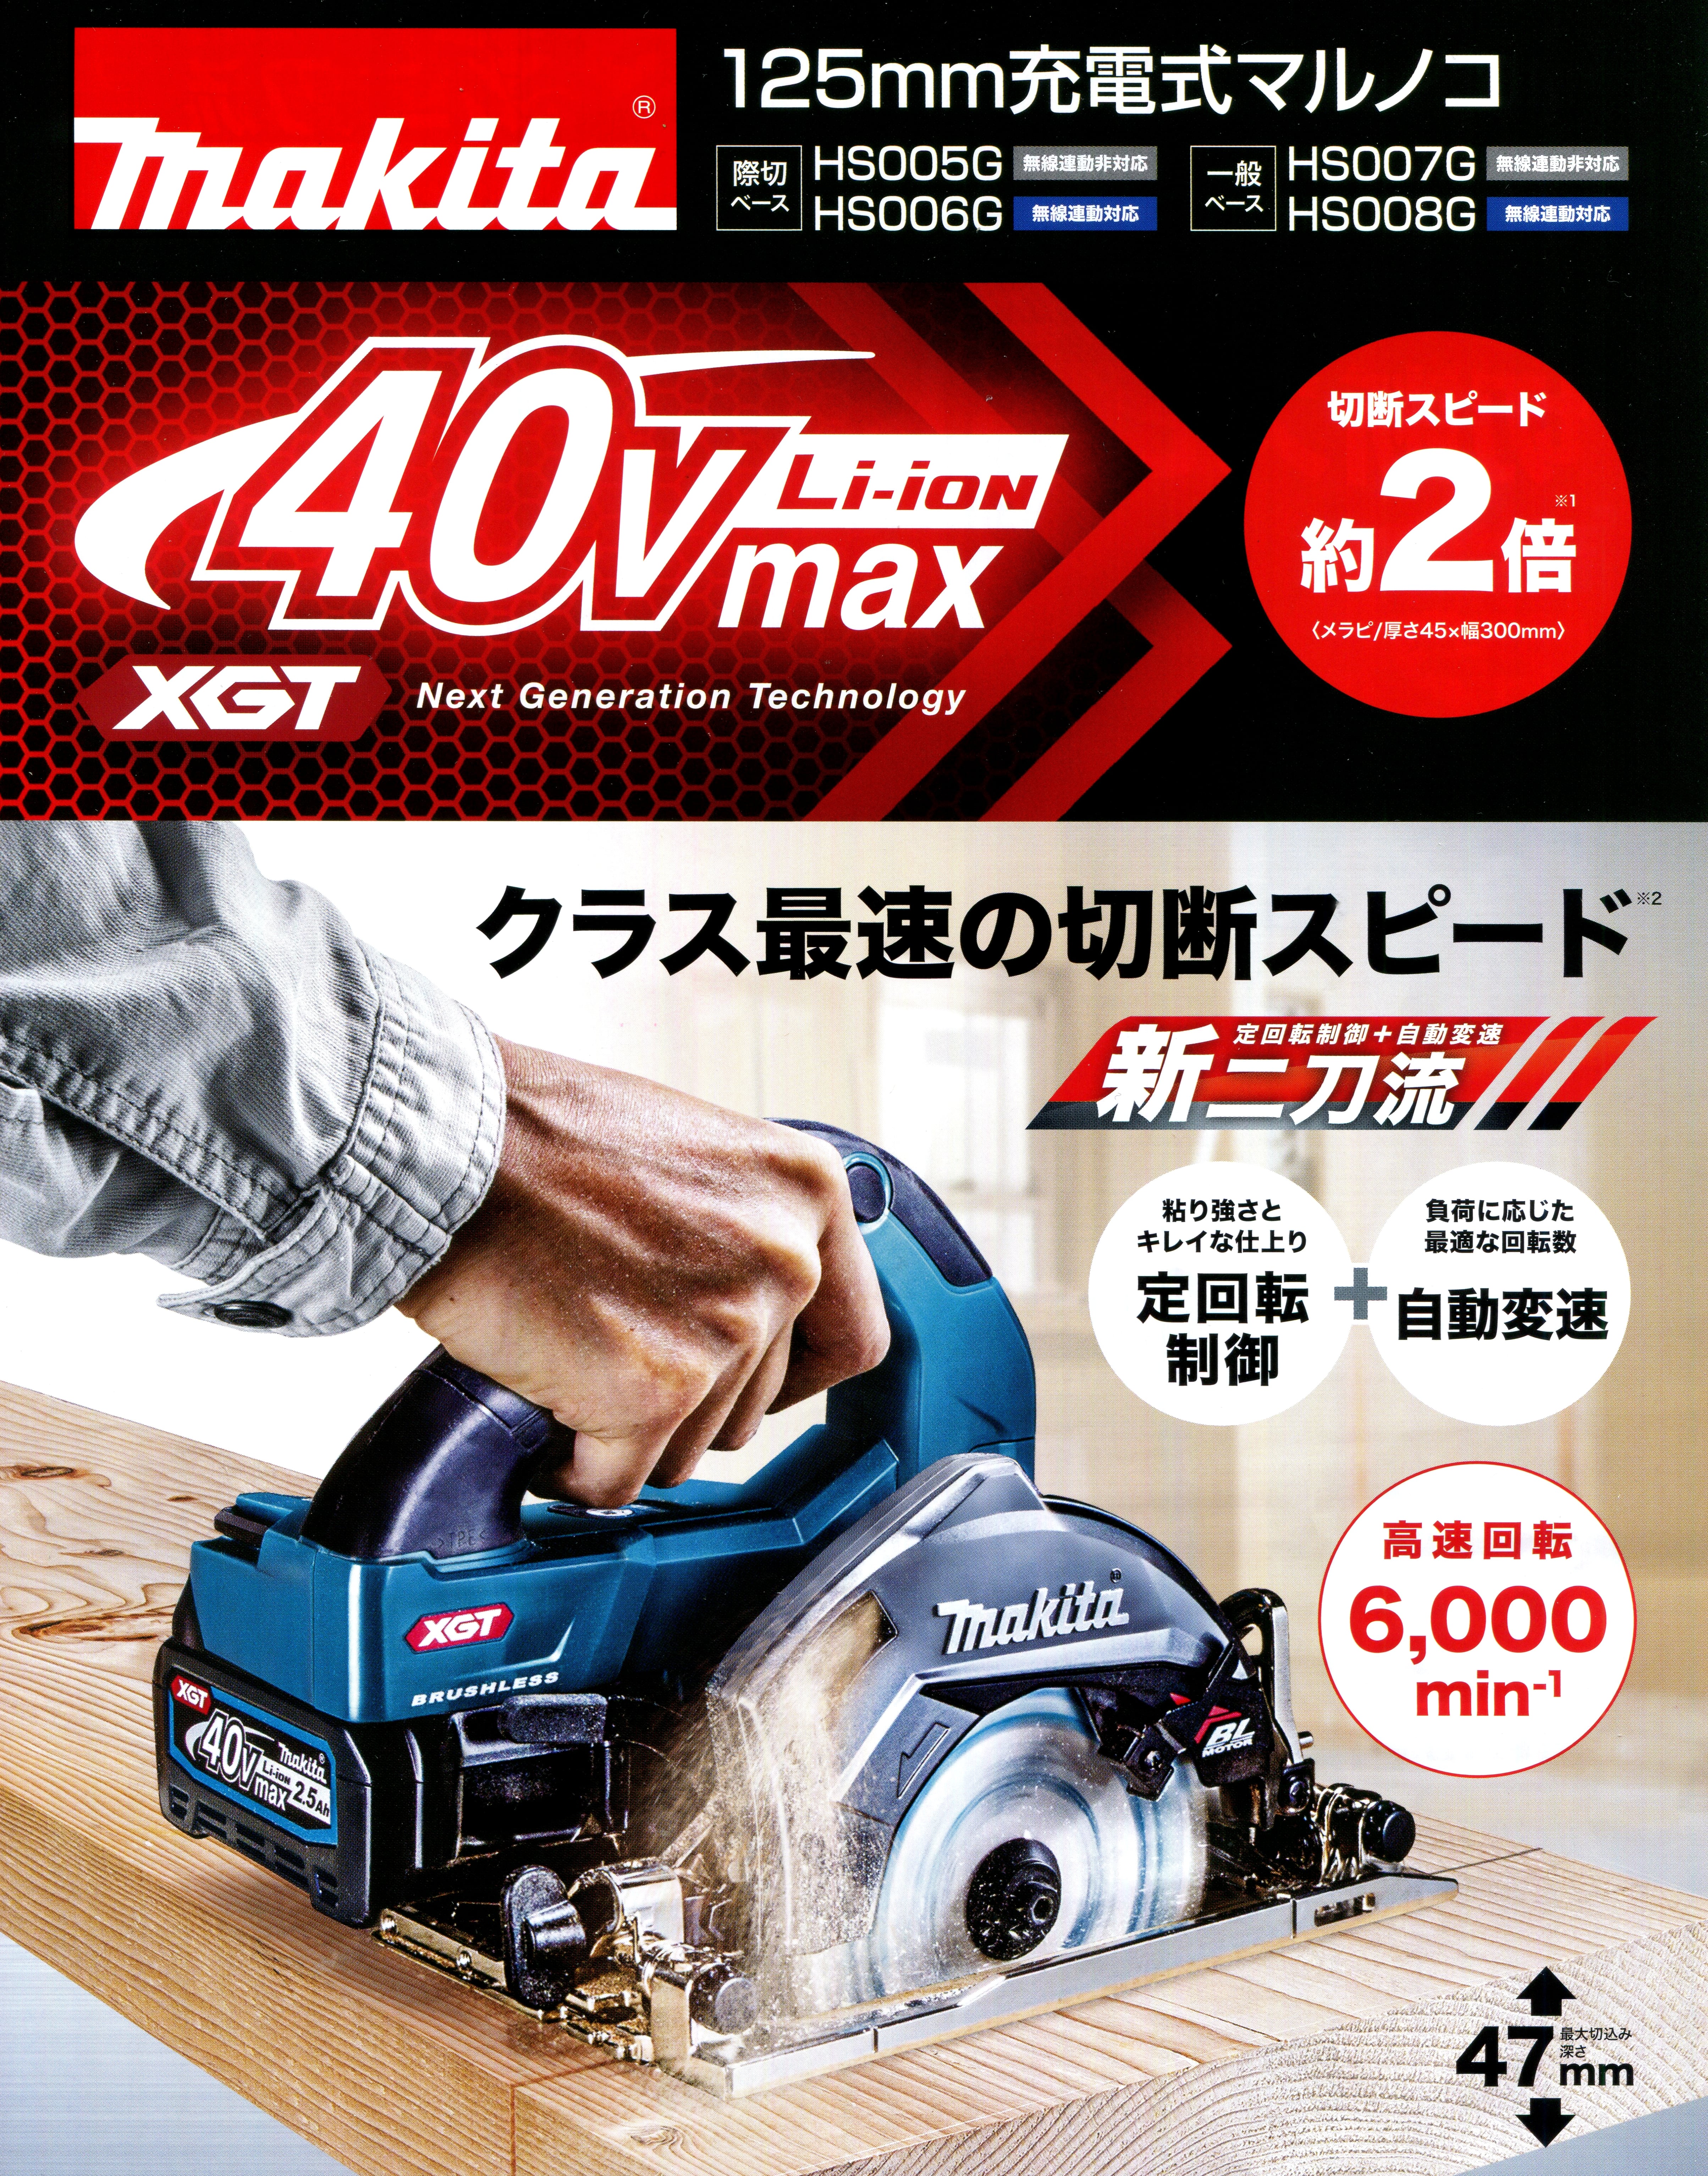 マキタ HS006GRDX 40Vmax充電式マルノコ 125mm【際切りベース】無線